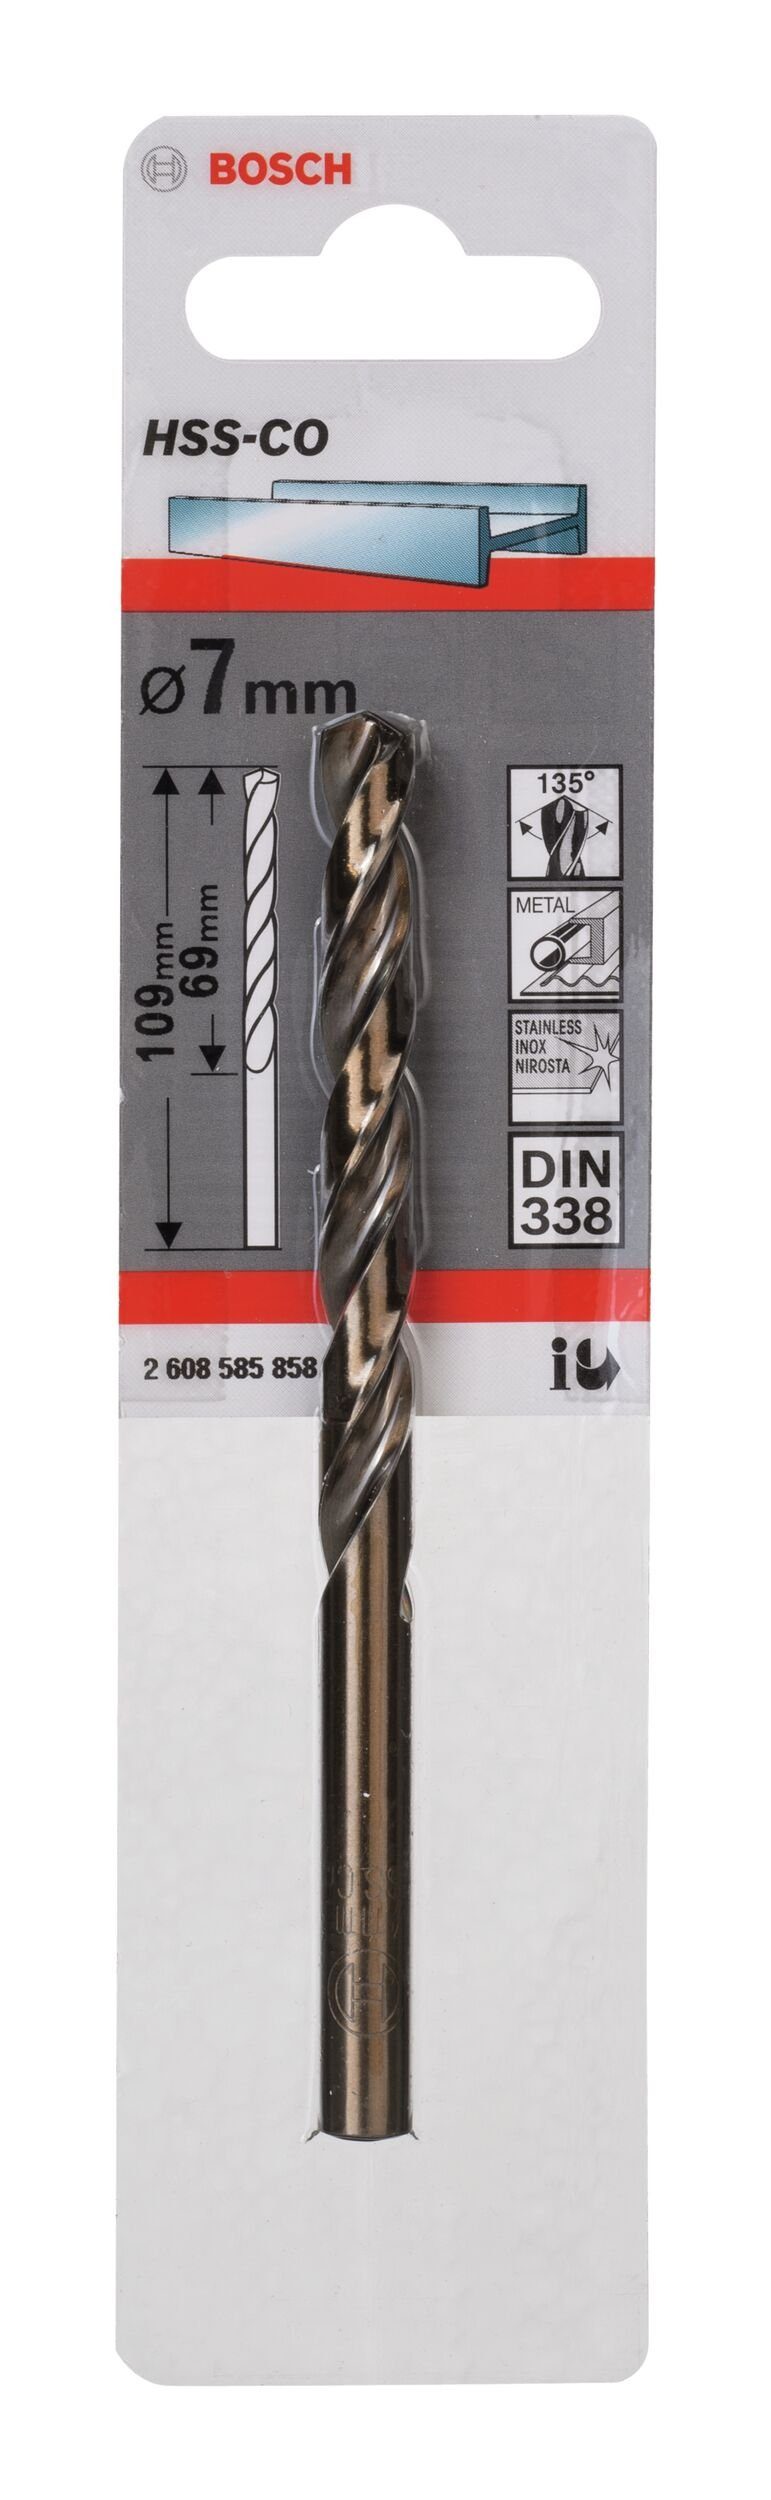 BOSCH Metallbohrer, HSS-Co (DIN 1er-Pack 338) x - - 69 mm 7 109 x